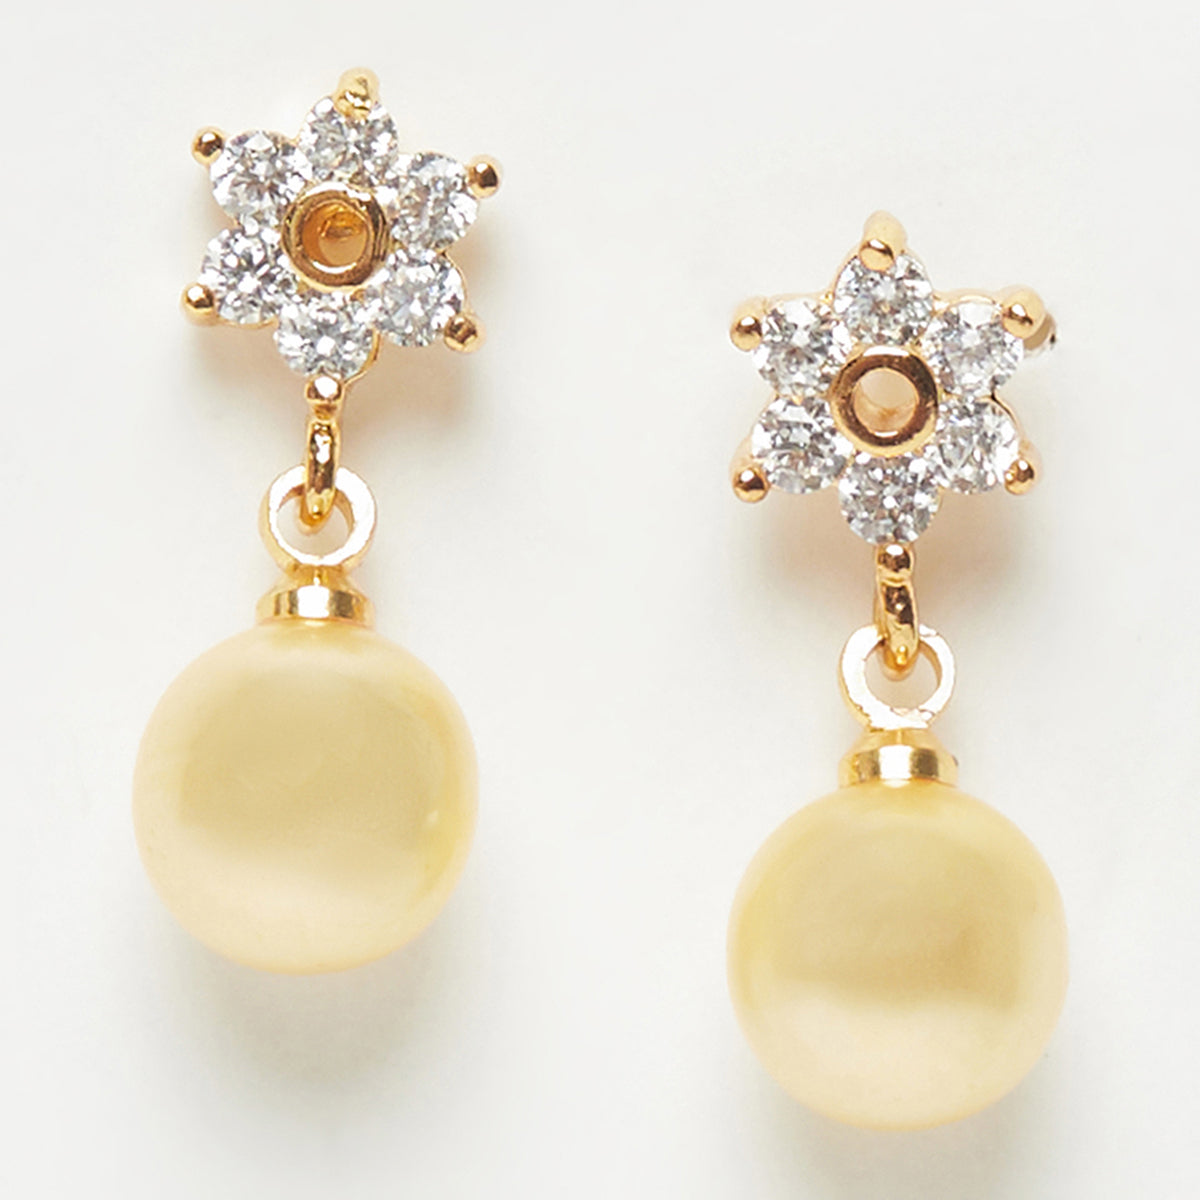 Gehena by Estele - Gold Tone Leaf Pearl Drop Earrings For Girls & Women :  Amazon.in: Fashion